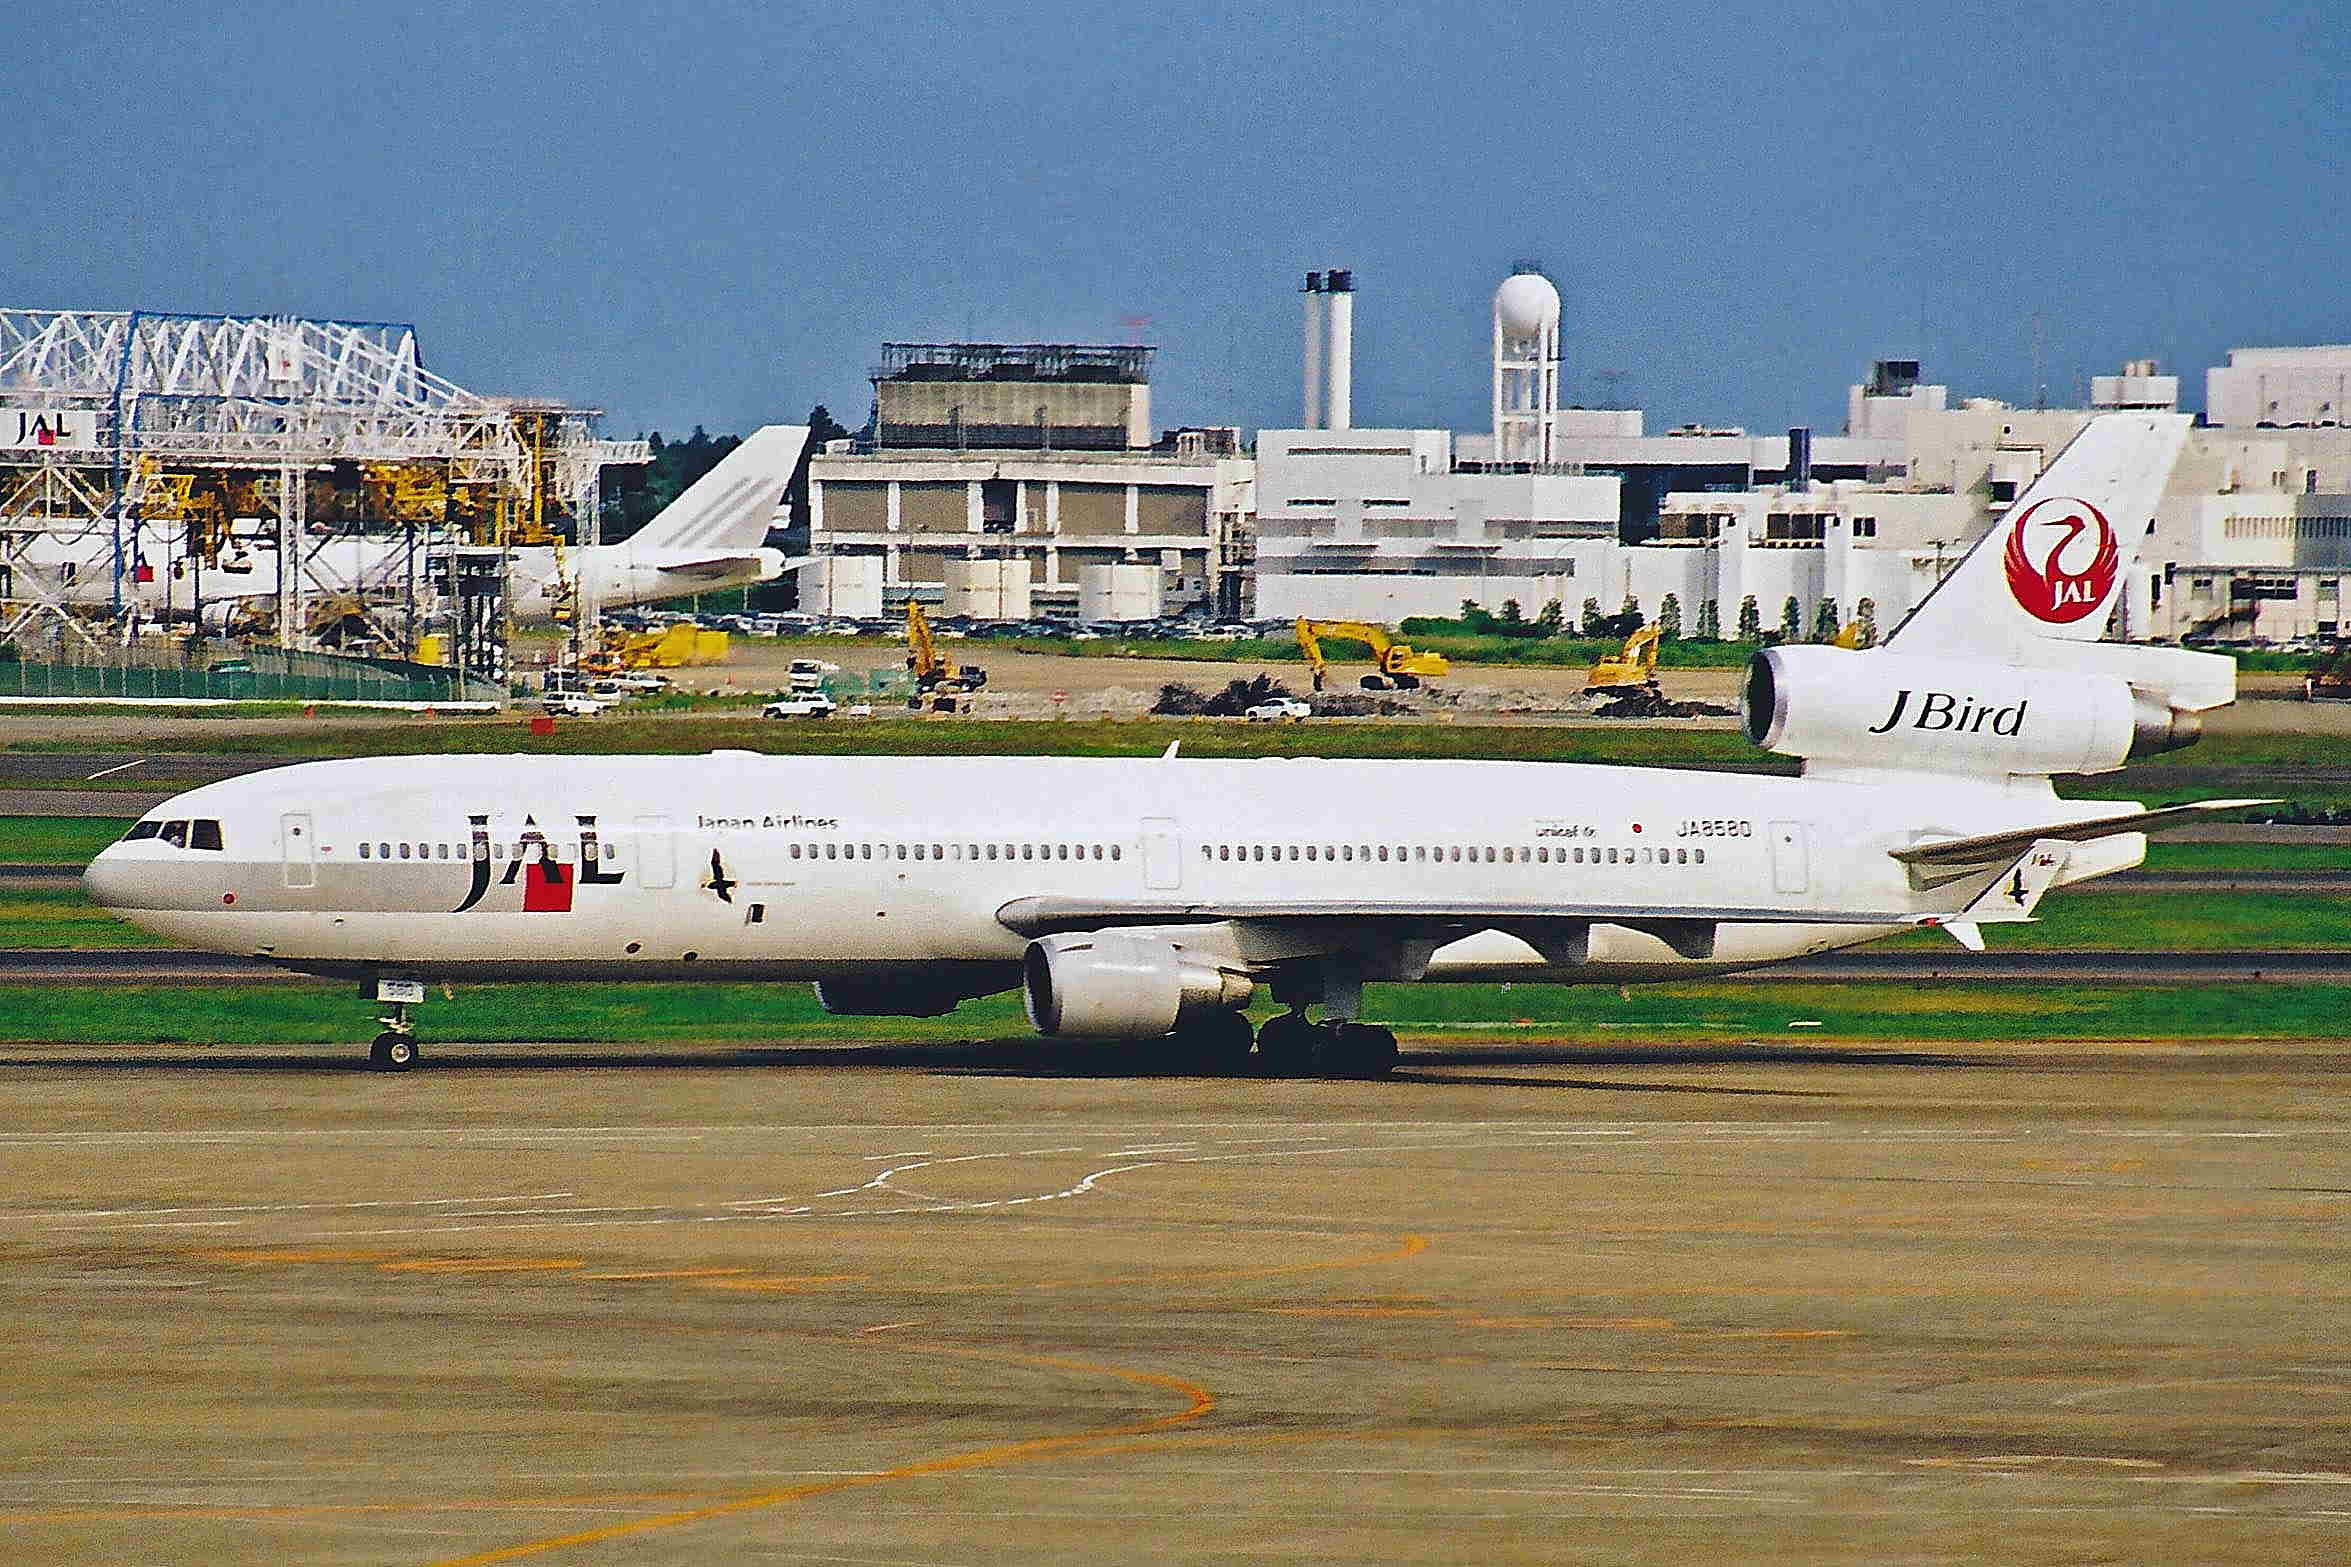 日本航空md11機乱高下事故 Wikipedia